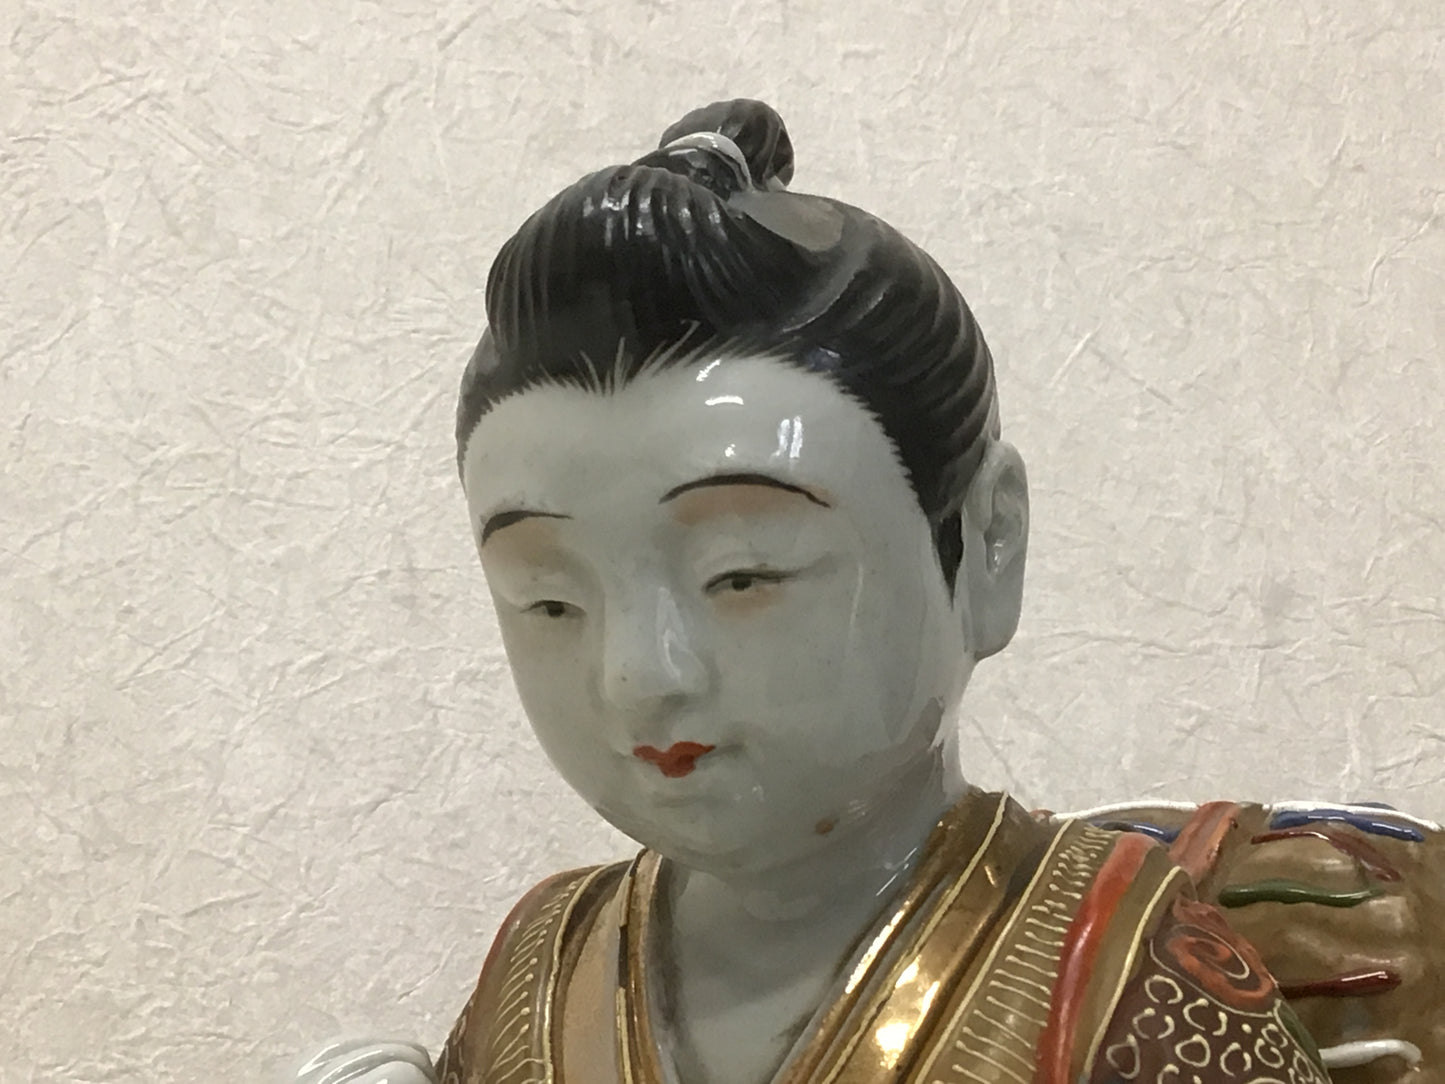 Y1928 STATUE Kutani-ware Kinjiro Ninomiya figure figurine Japan vintage antique